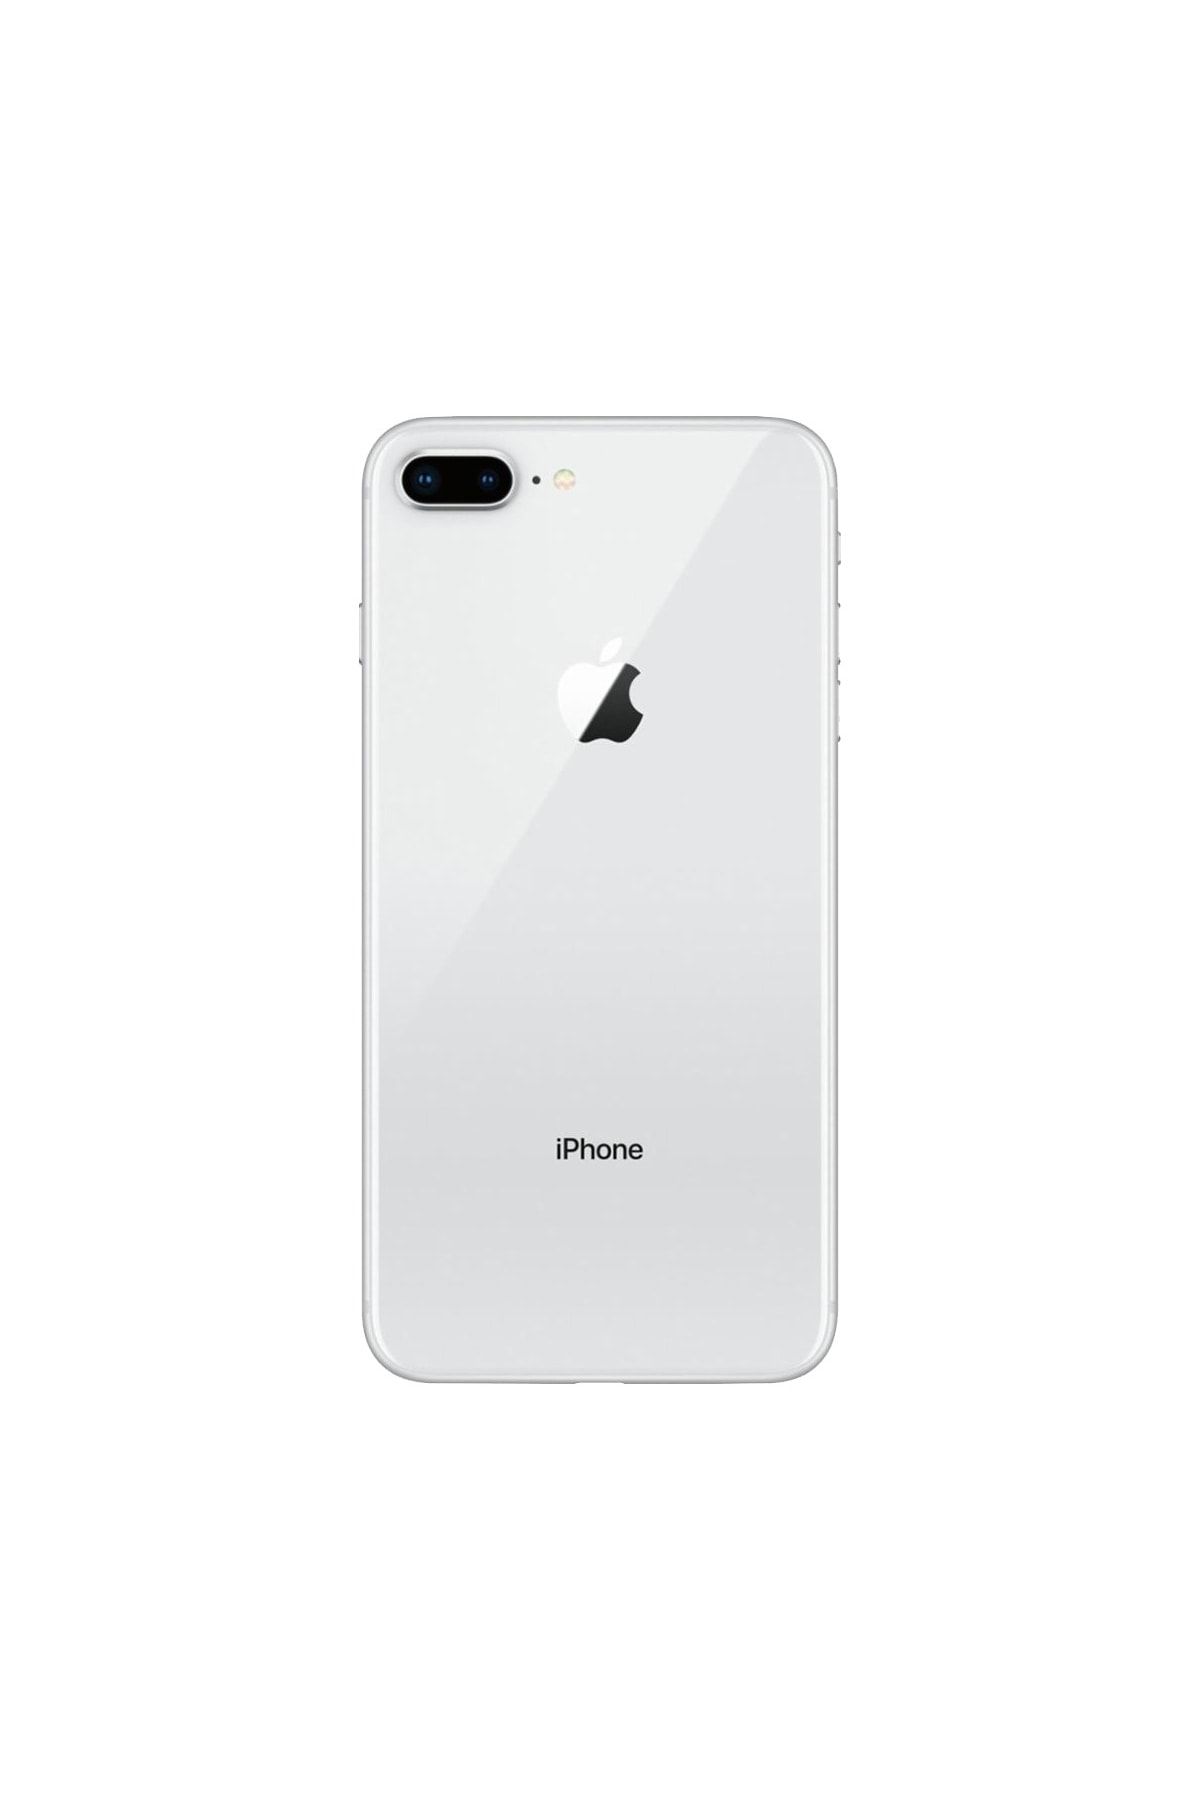 Apple Yenilenmiş iPhone 8 Plus 64 GB Gümüş Cep Telefonu (12 Ay Garantili) - A Kalite